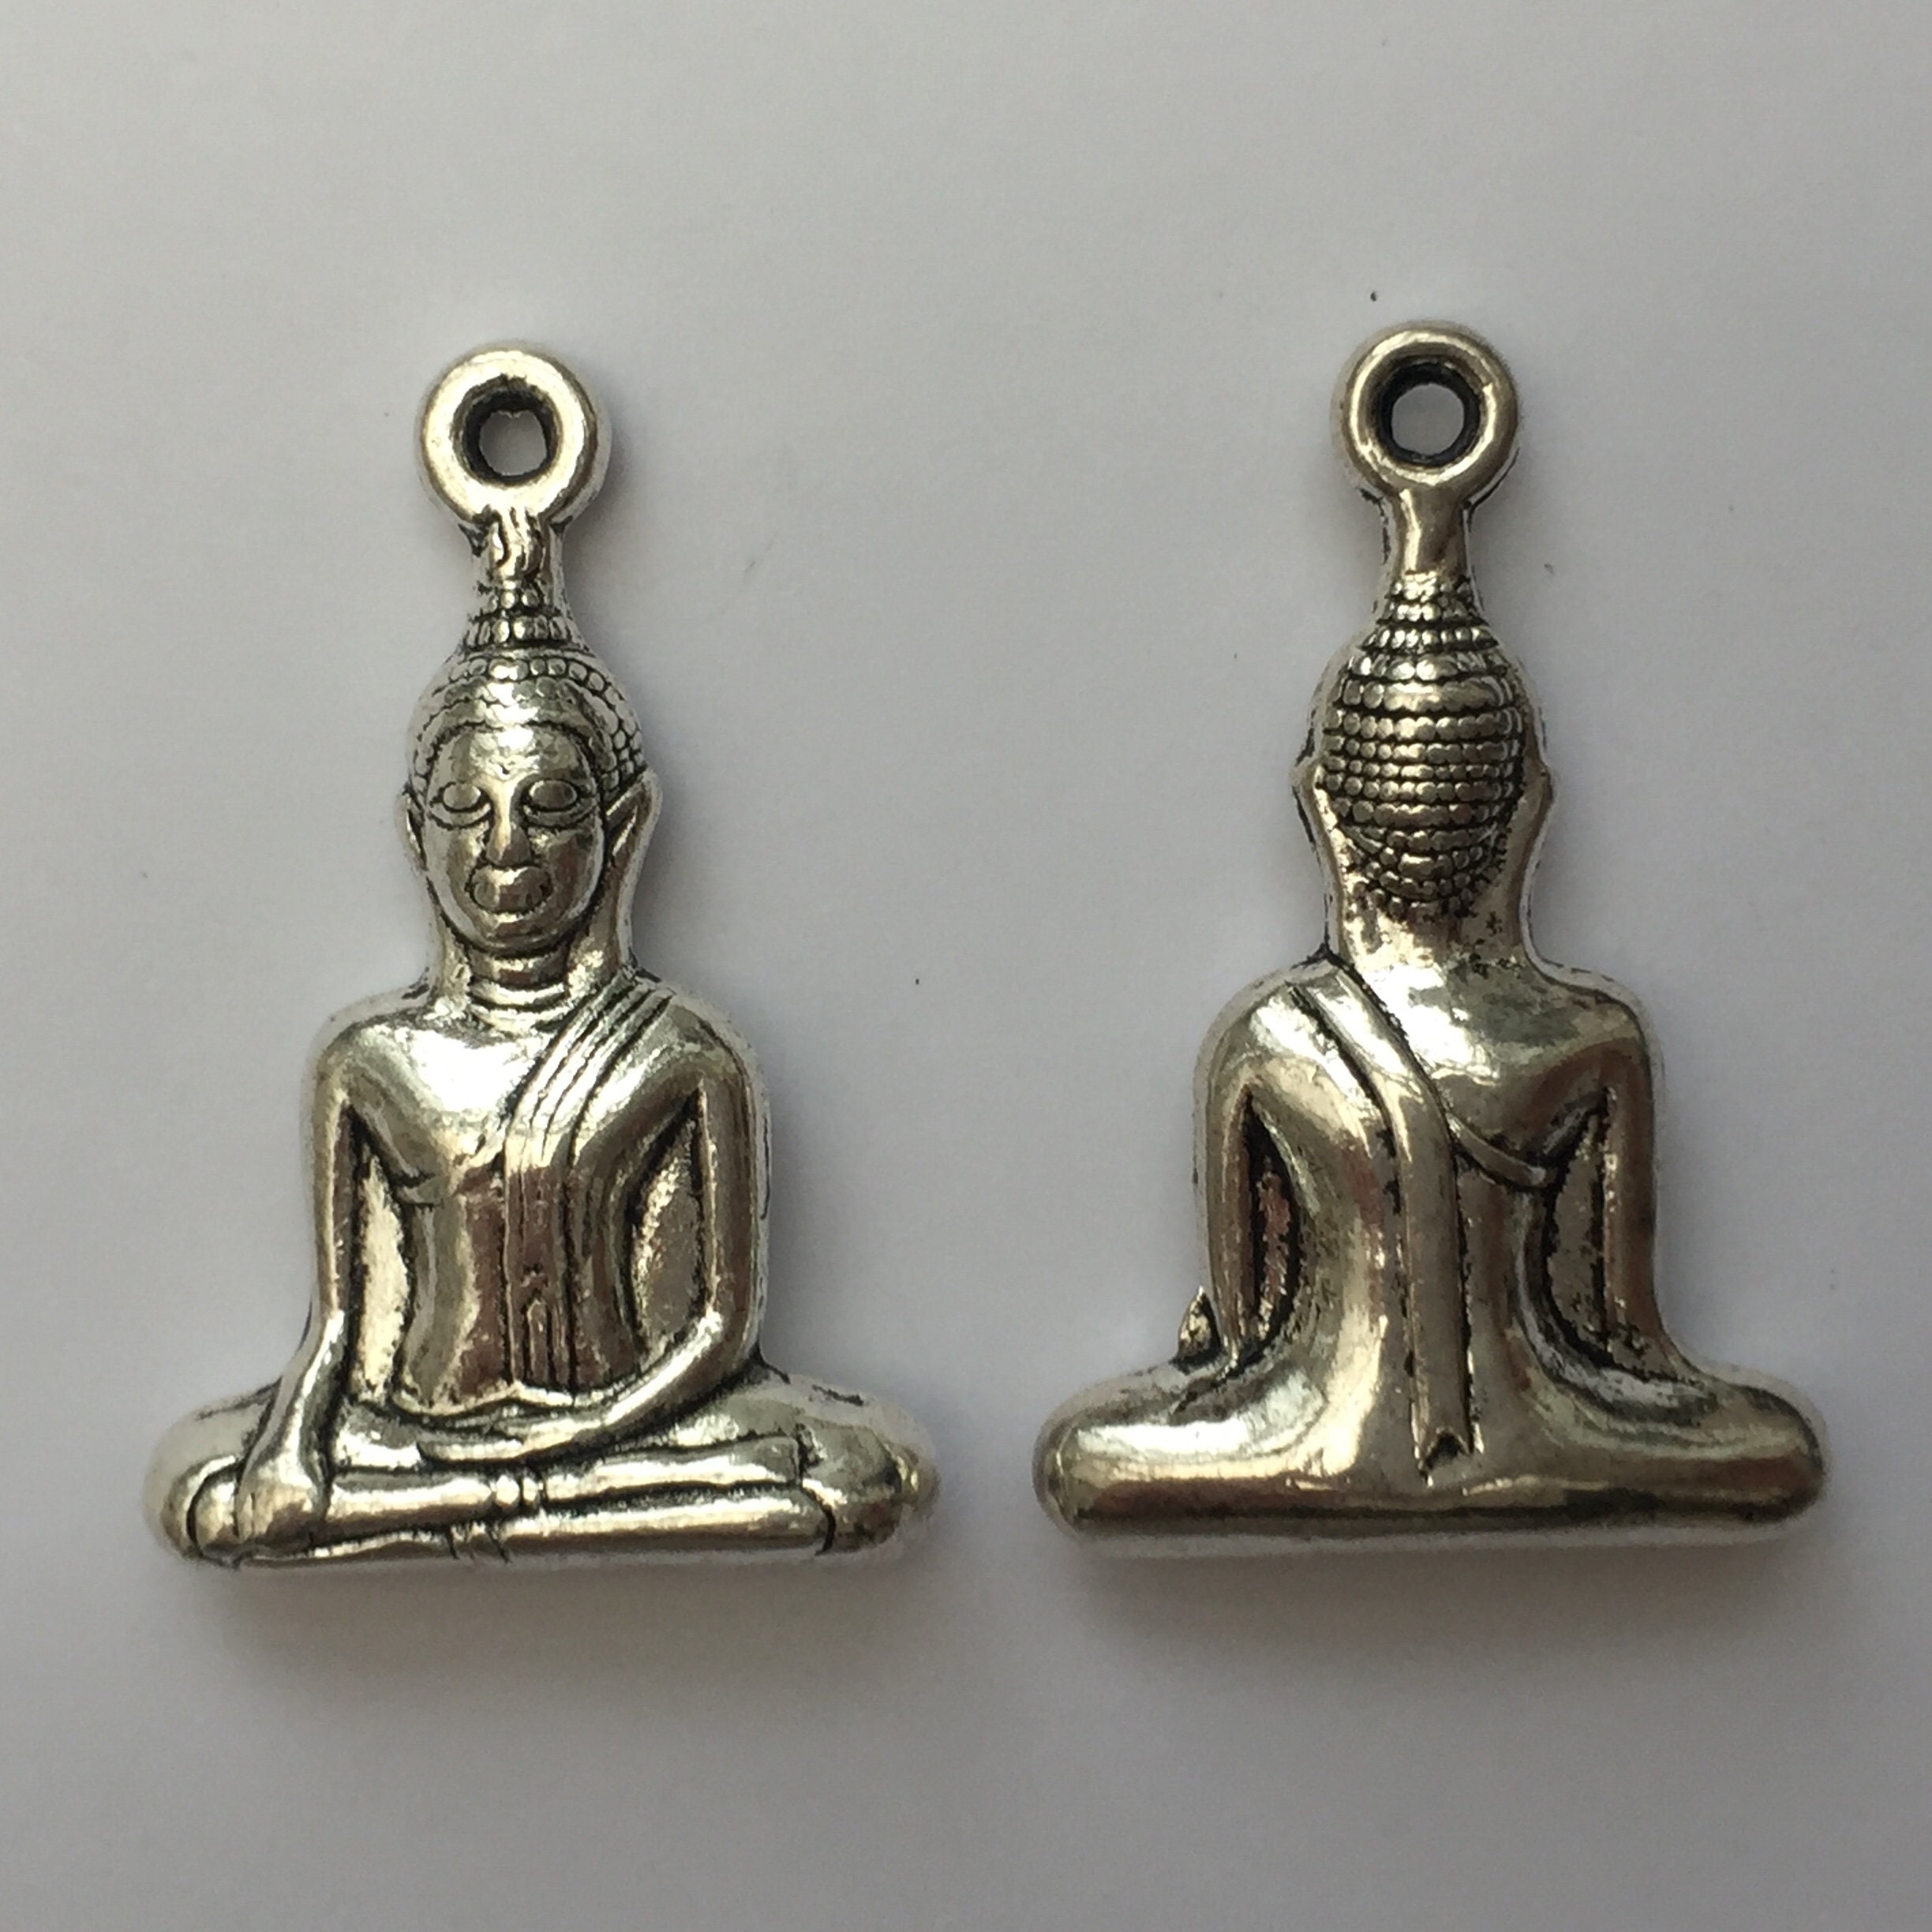 2 Buddha Charms Antique Silver Tone BUD08 - Etsy UK